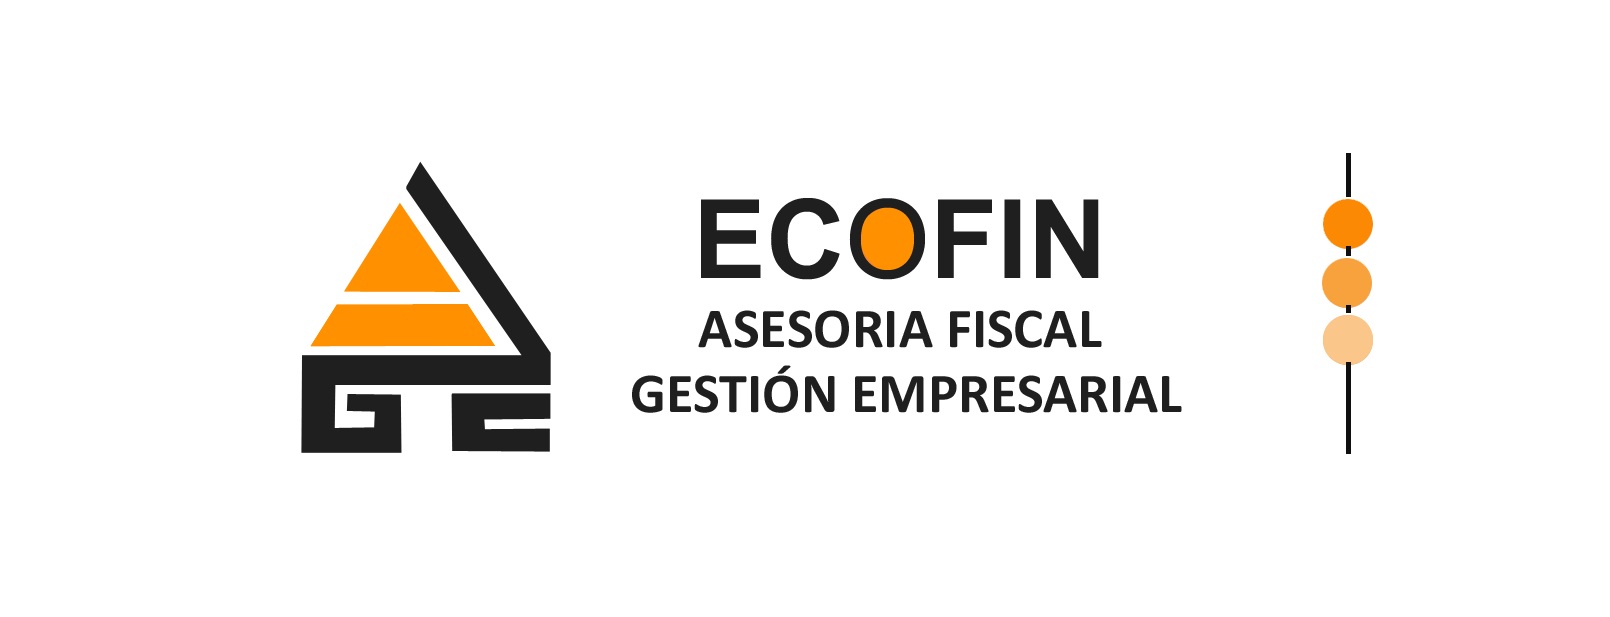 Gestión Empresarial Ecofin S L